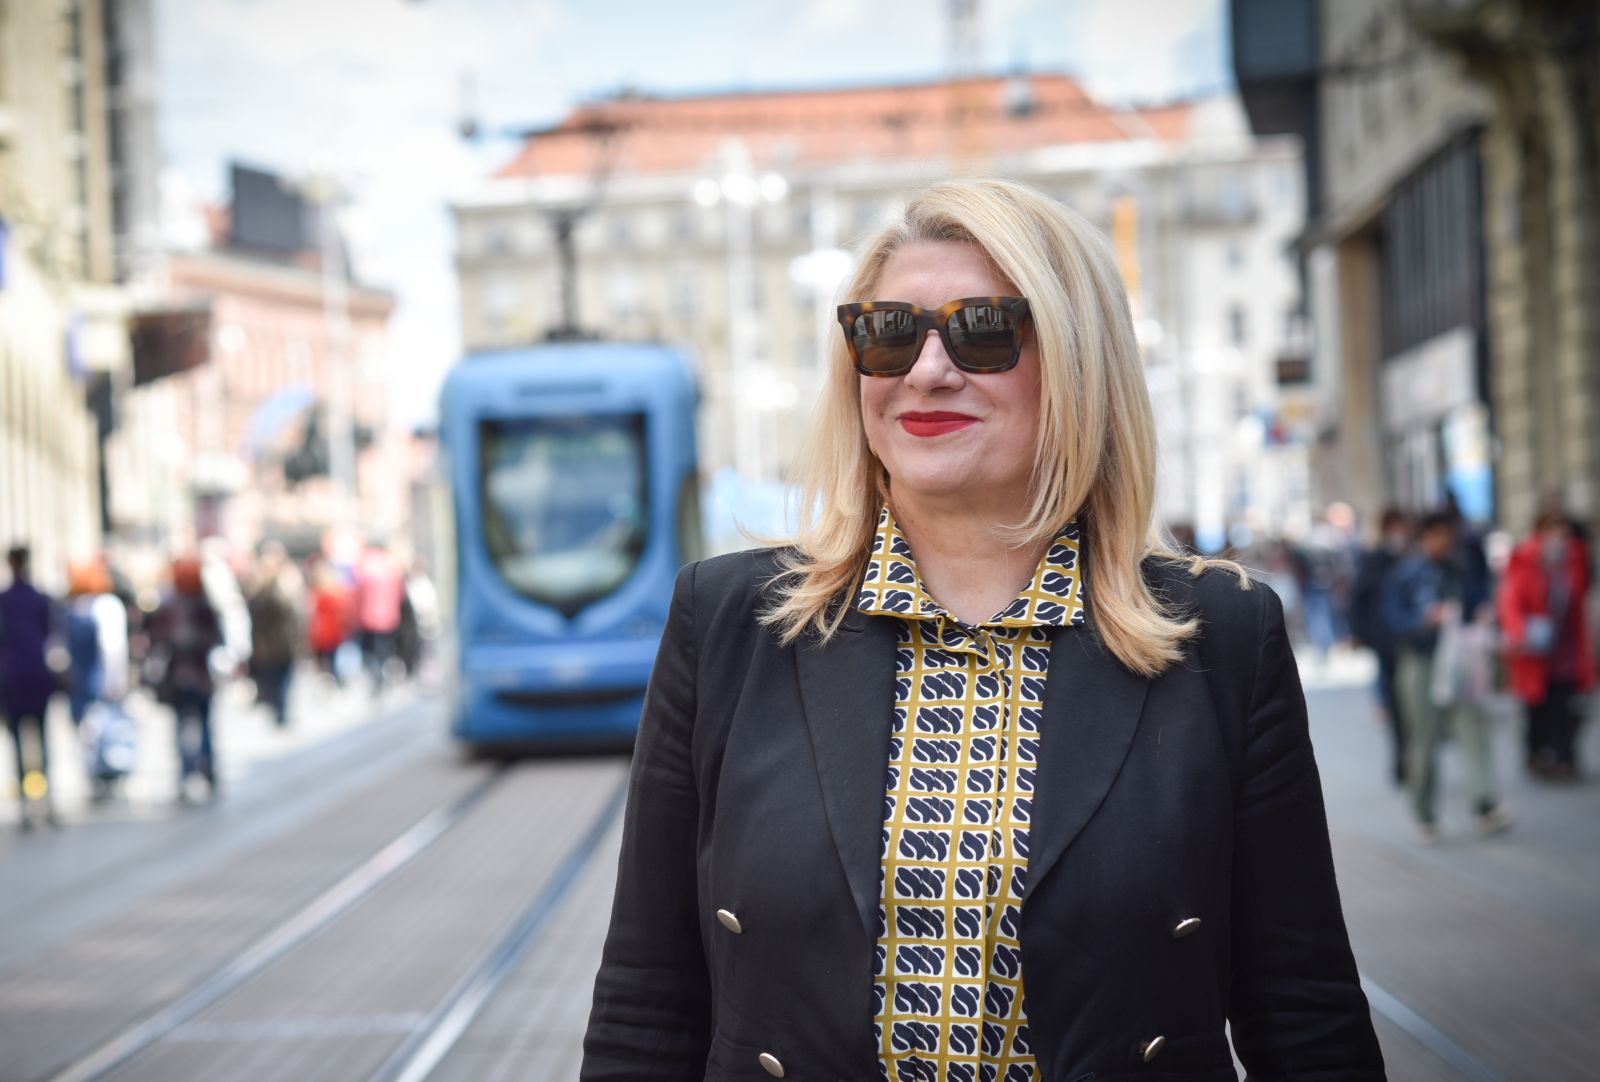 08.05.2021., Zagreb - Vesna Skare Ozbolt, kandidatkinja za gradonacelnicu Zagreba. 

Photo: Sasa ZinajaNFoto